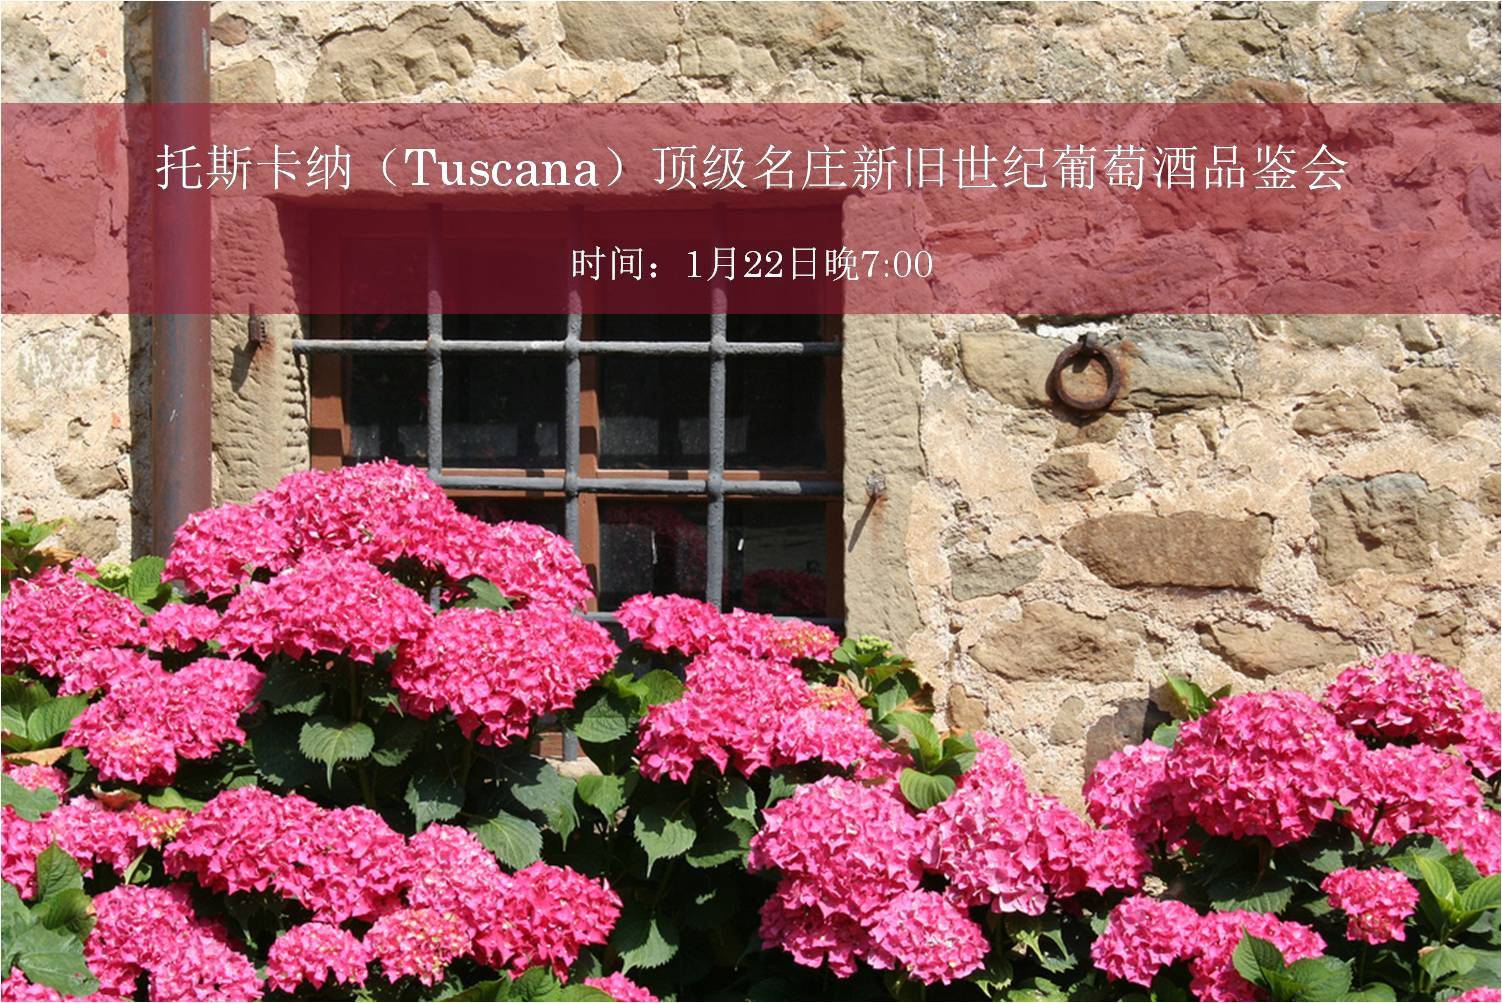 【北京】托斯卡纳(Tuscana)顶级名庄新旧世纪葡萄酒品鉴会